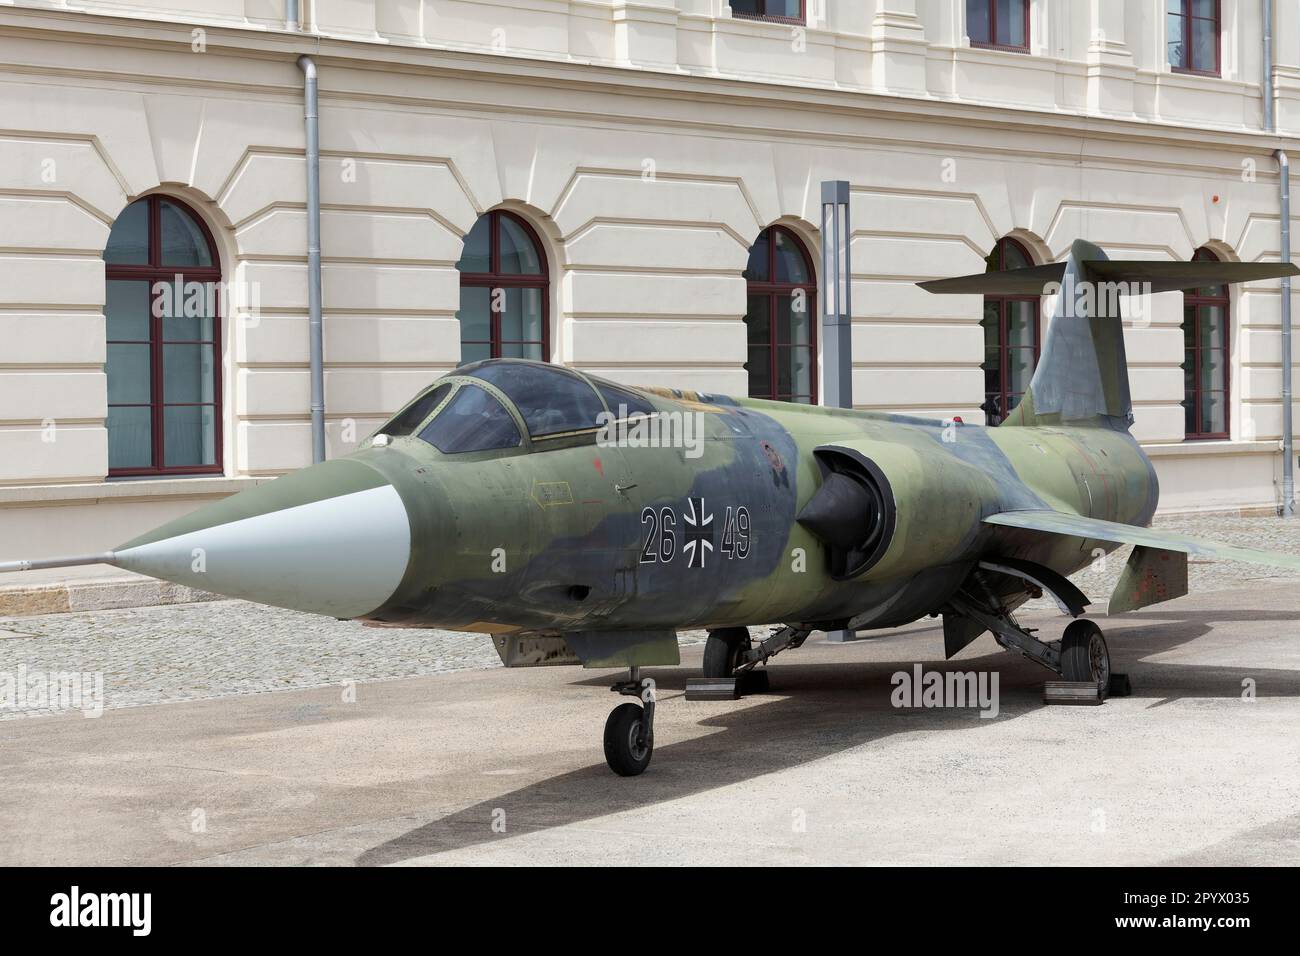 Lockheed F-104 Starfighter, avion de chasse à un seul moteur, Musée d'histoire militaire des forces armées allemandes, Dresde, Saxe, Allemagne Banque D'Images